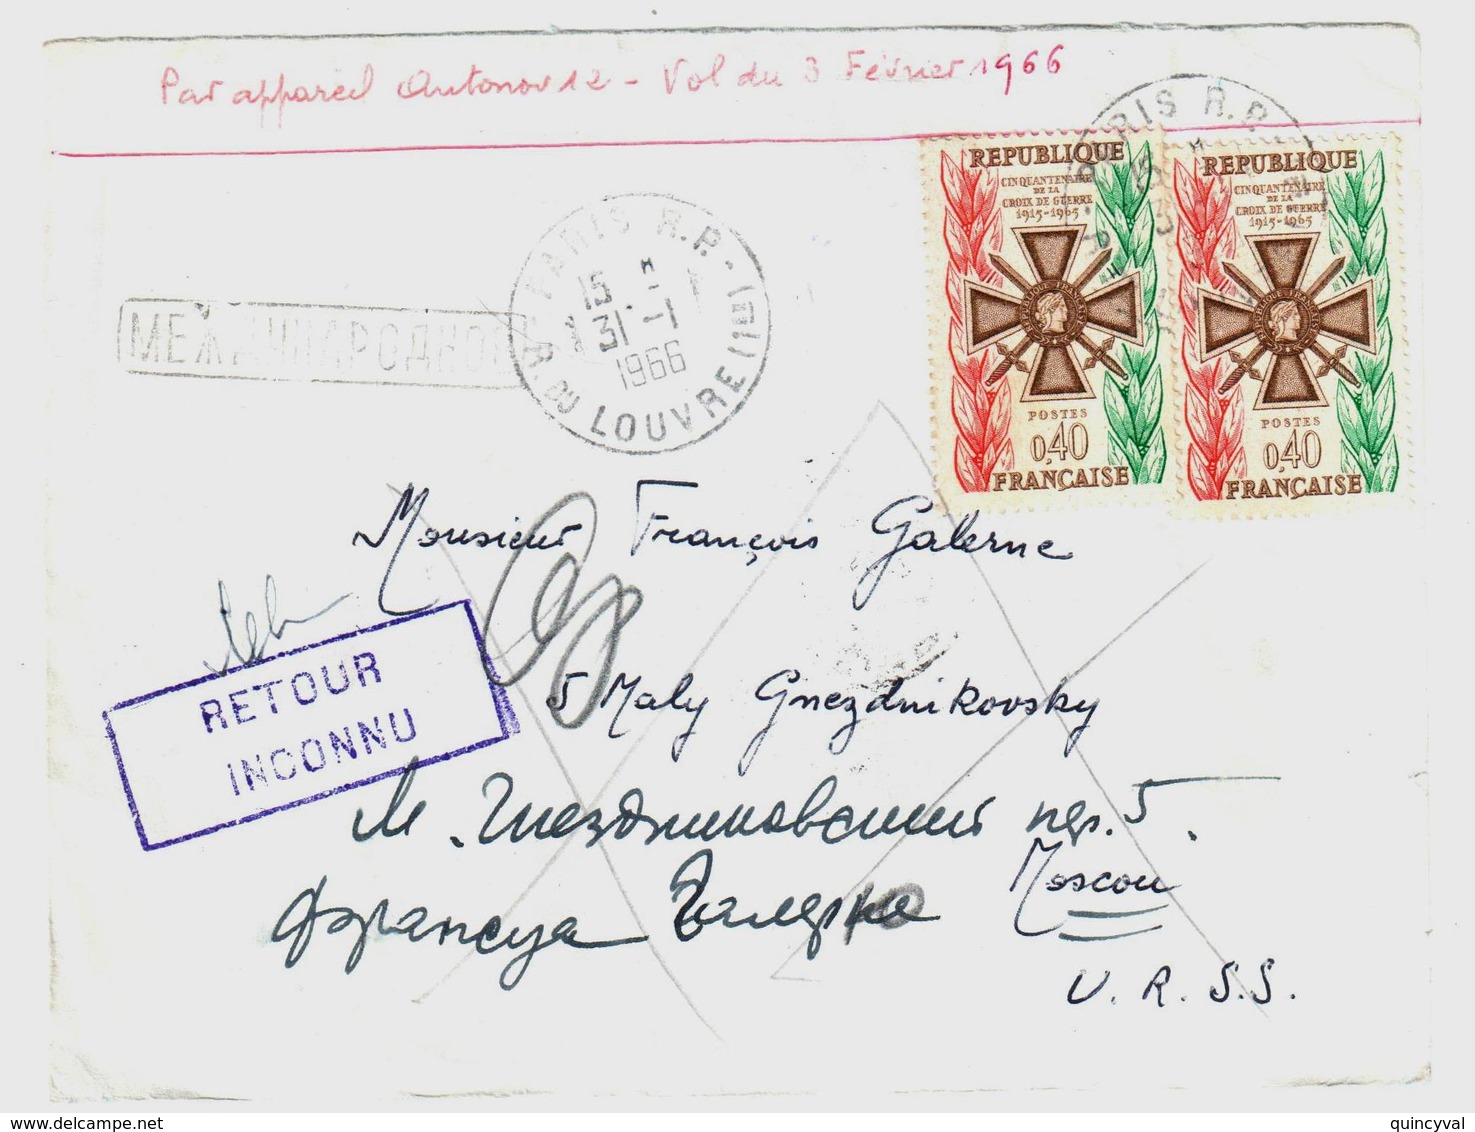 PARIS Lettre Dest Moscou URSS Russie Retour Envoyeur INCONNU 40c Croix De Guerre Yv 1452 Ob 31 1 1966 Verso MOCKBA - Briefe U. Dokumente